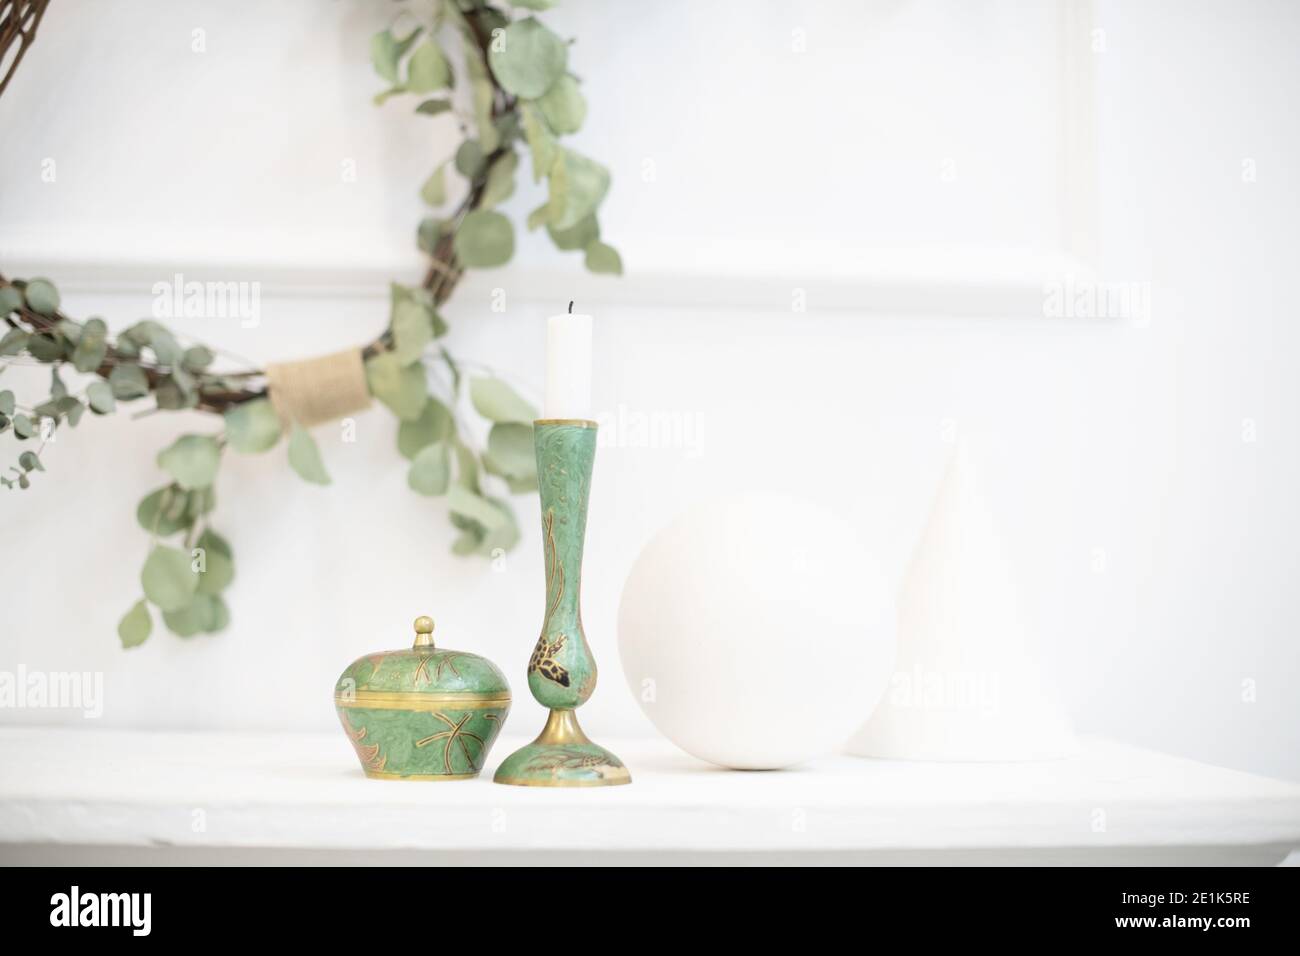 Ein Kranz aus Eukalyptus im Inneren. Japanisches Design kombiniert mit skandinavischem Minimalismus in einem modernen hellen Haus-Japandi. Beruhigende Einrichtung Stockfoto